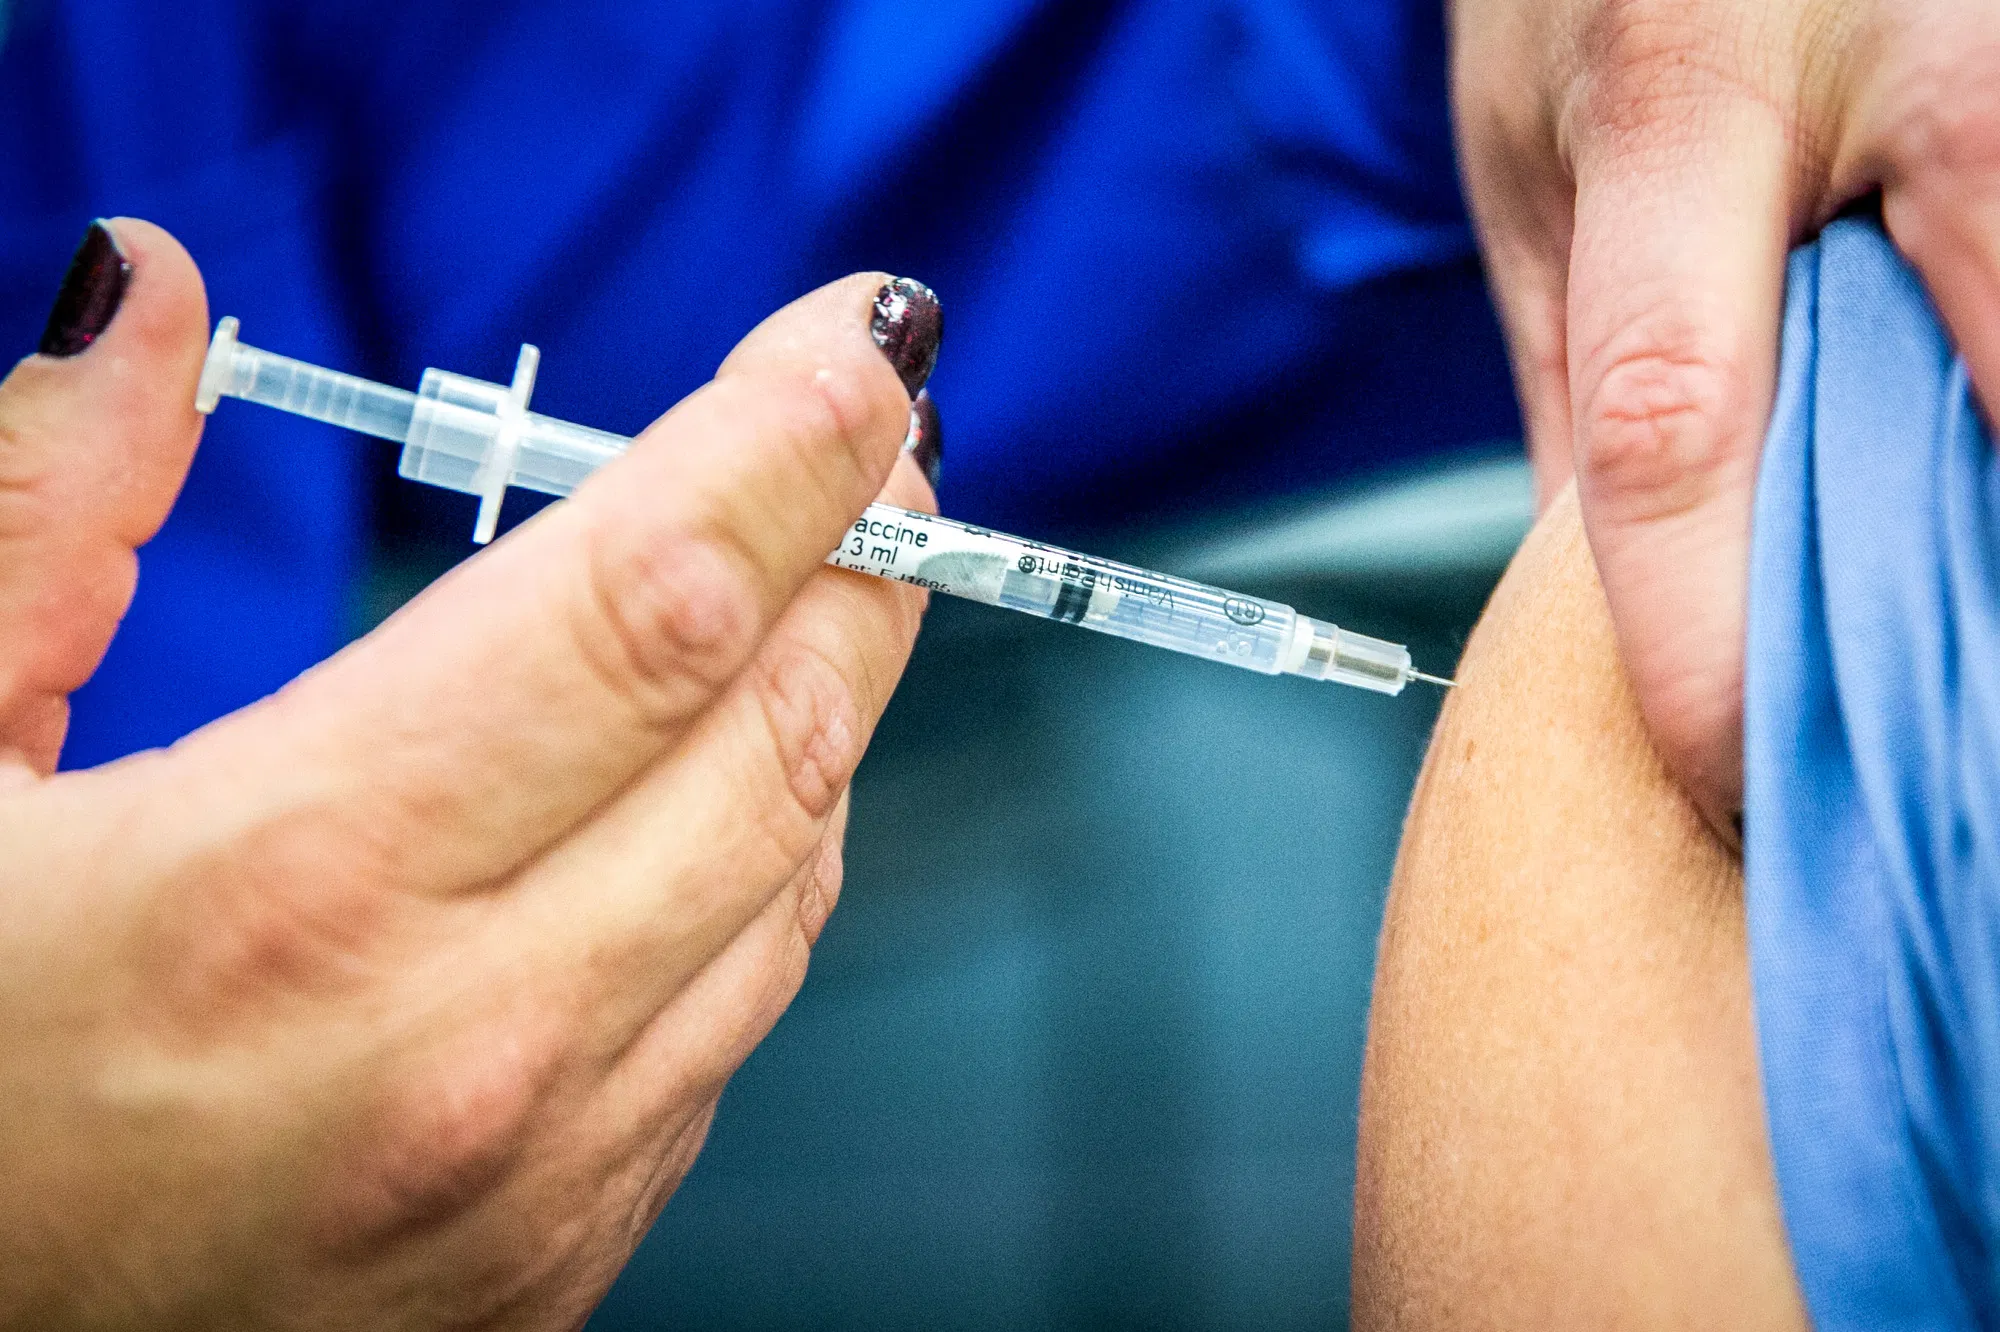  Infermierja gjermane dyshohet se iu dha njerëzve ujë me kripë në vend të vaksinës 